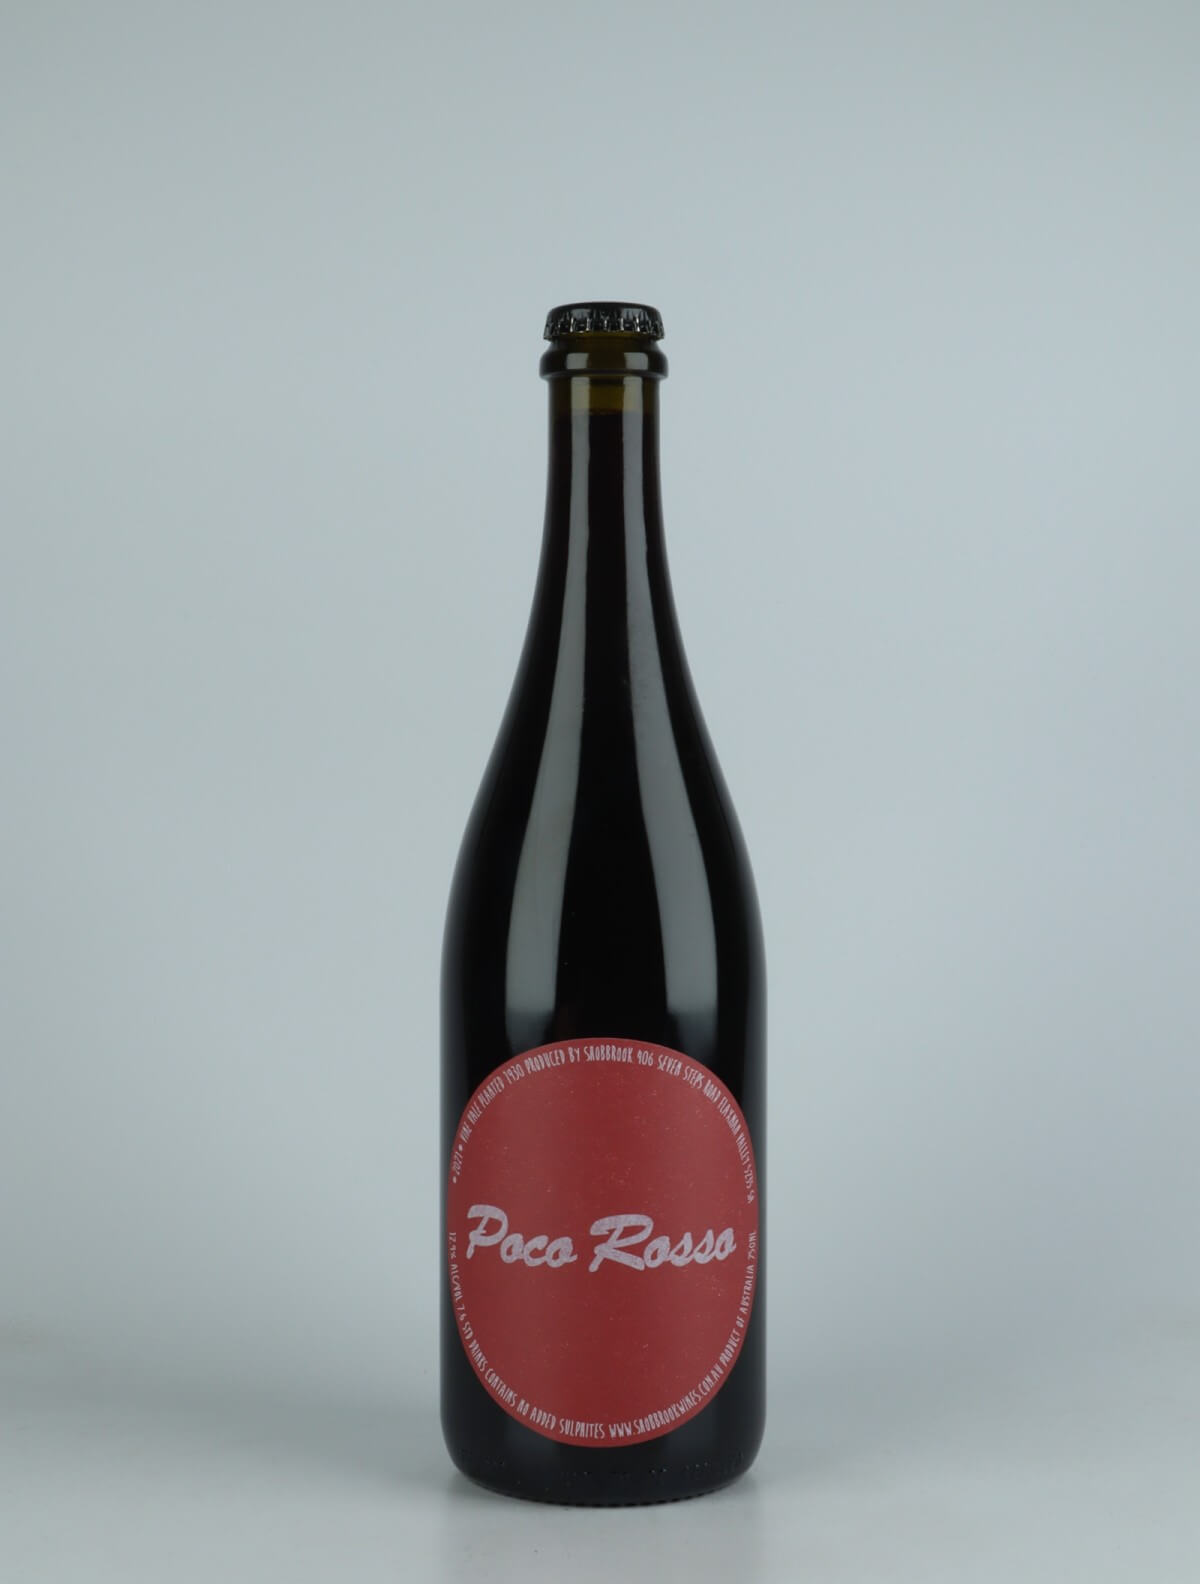 En flaske 2021 Poco Rosso Rødvin fra Tom Shobbrook, Adelaide Hills i Australien